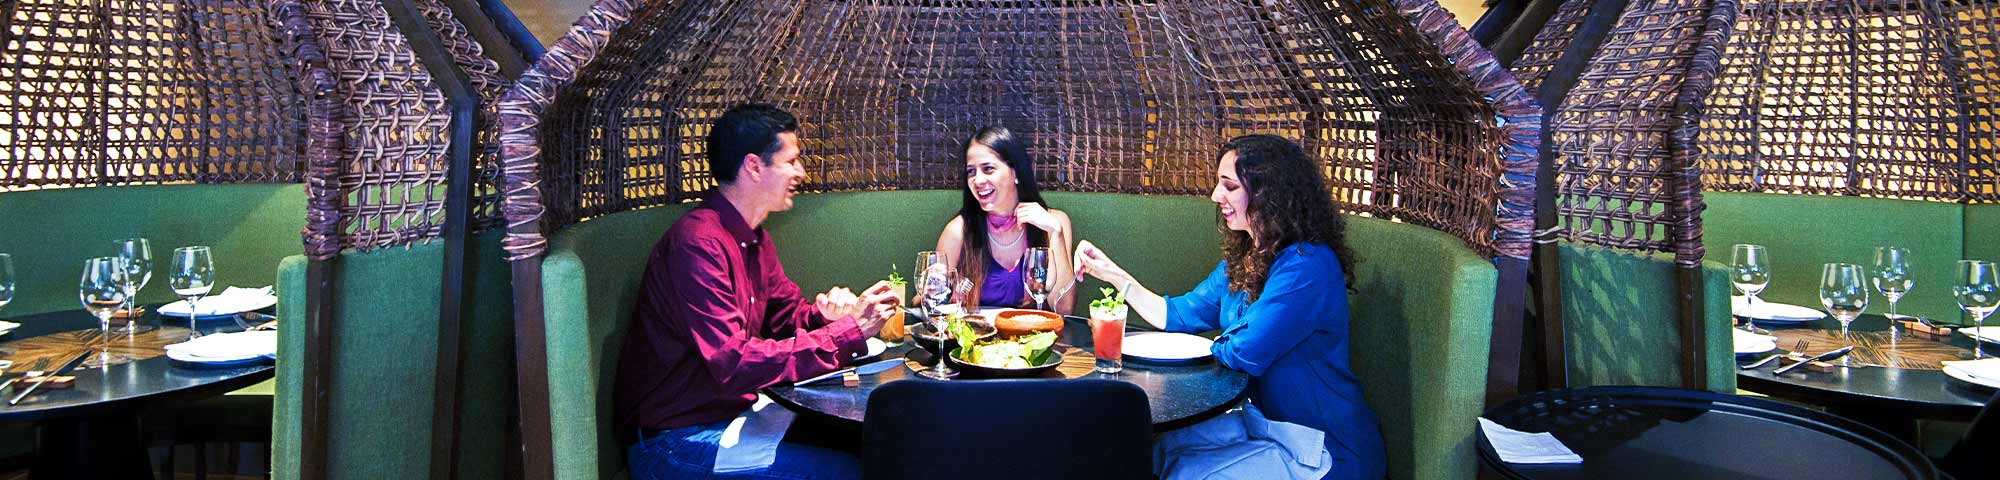 PROMPERÚ: Primera rueda de negocios de turismo gastronómico proyecta concretar 500 citas